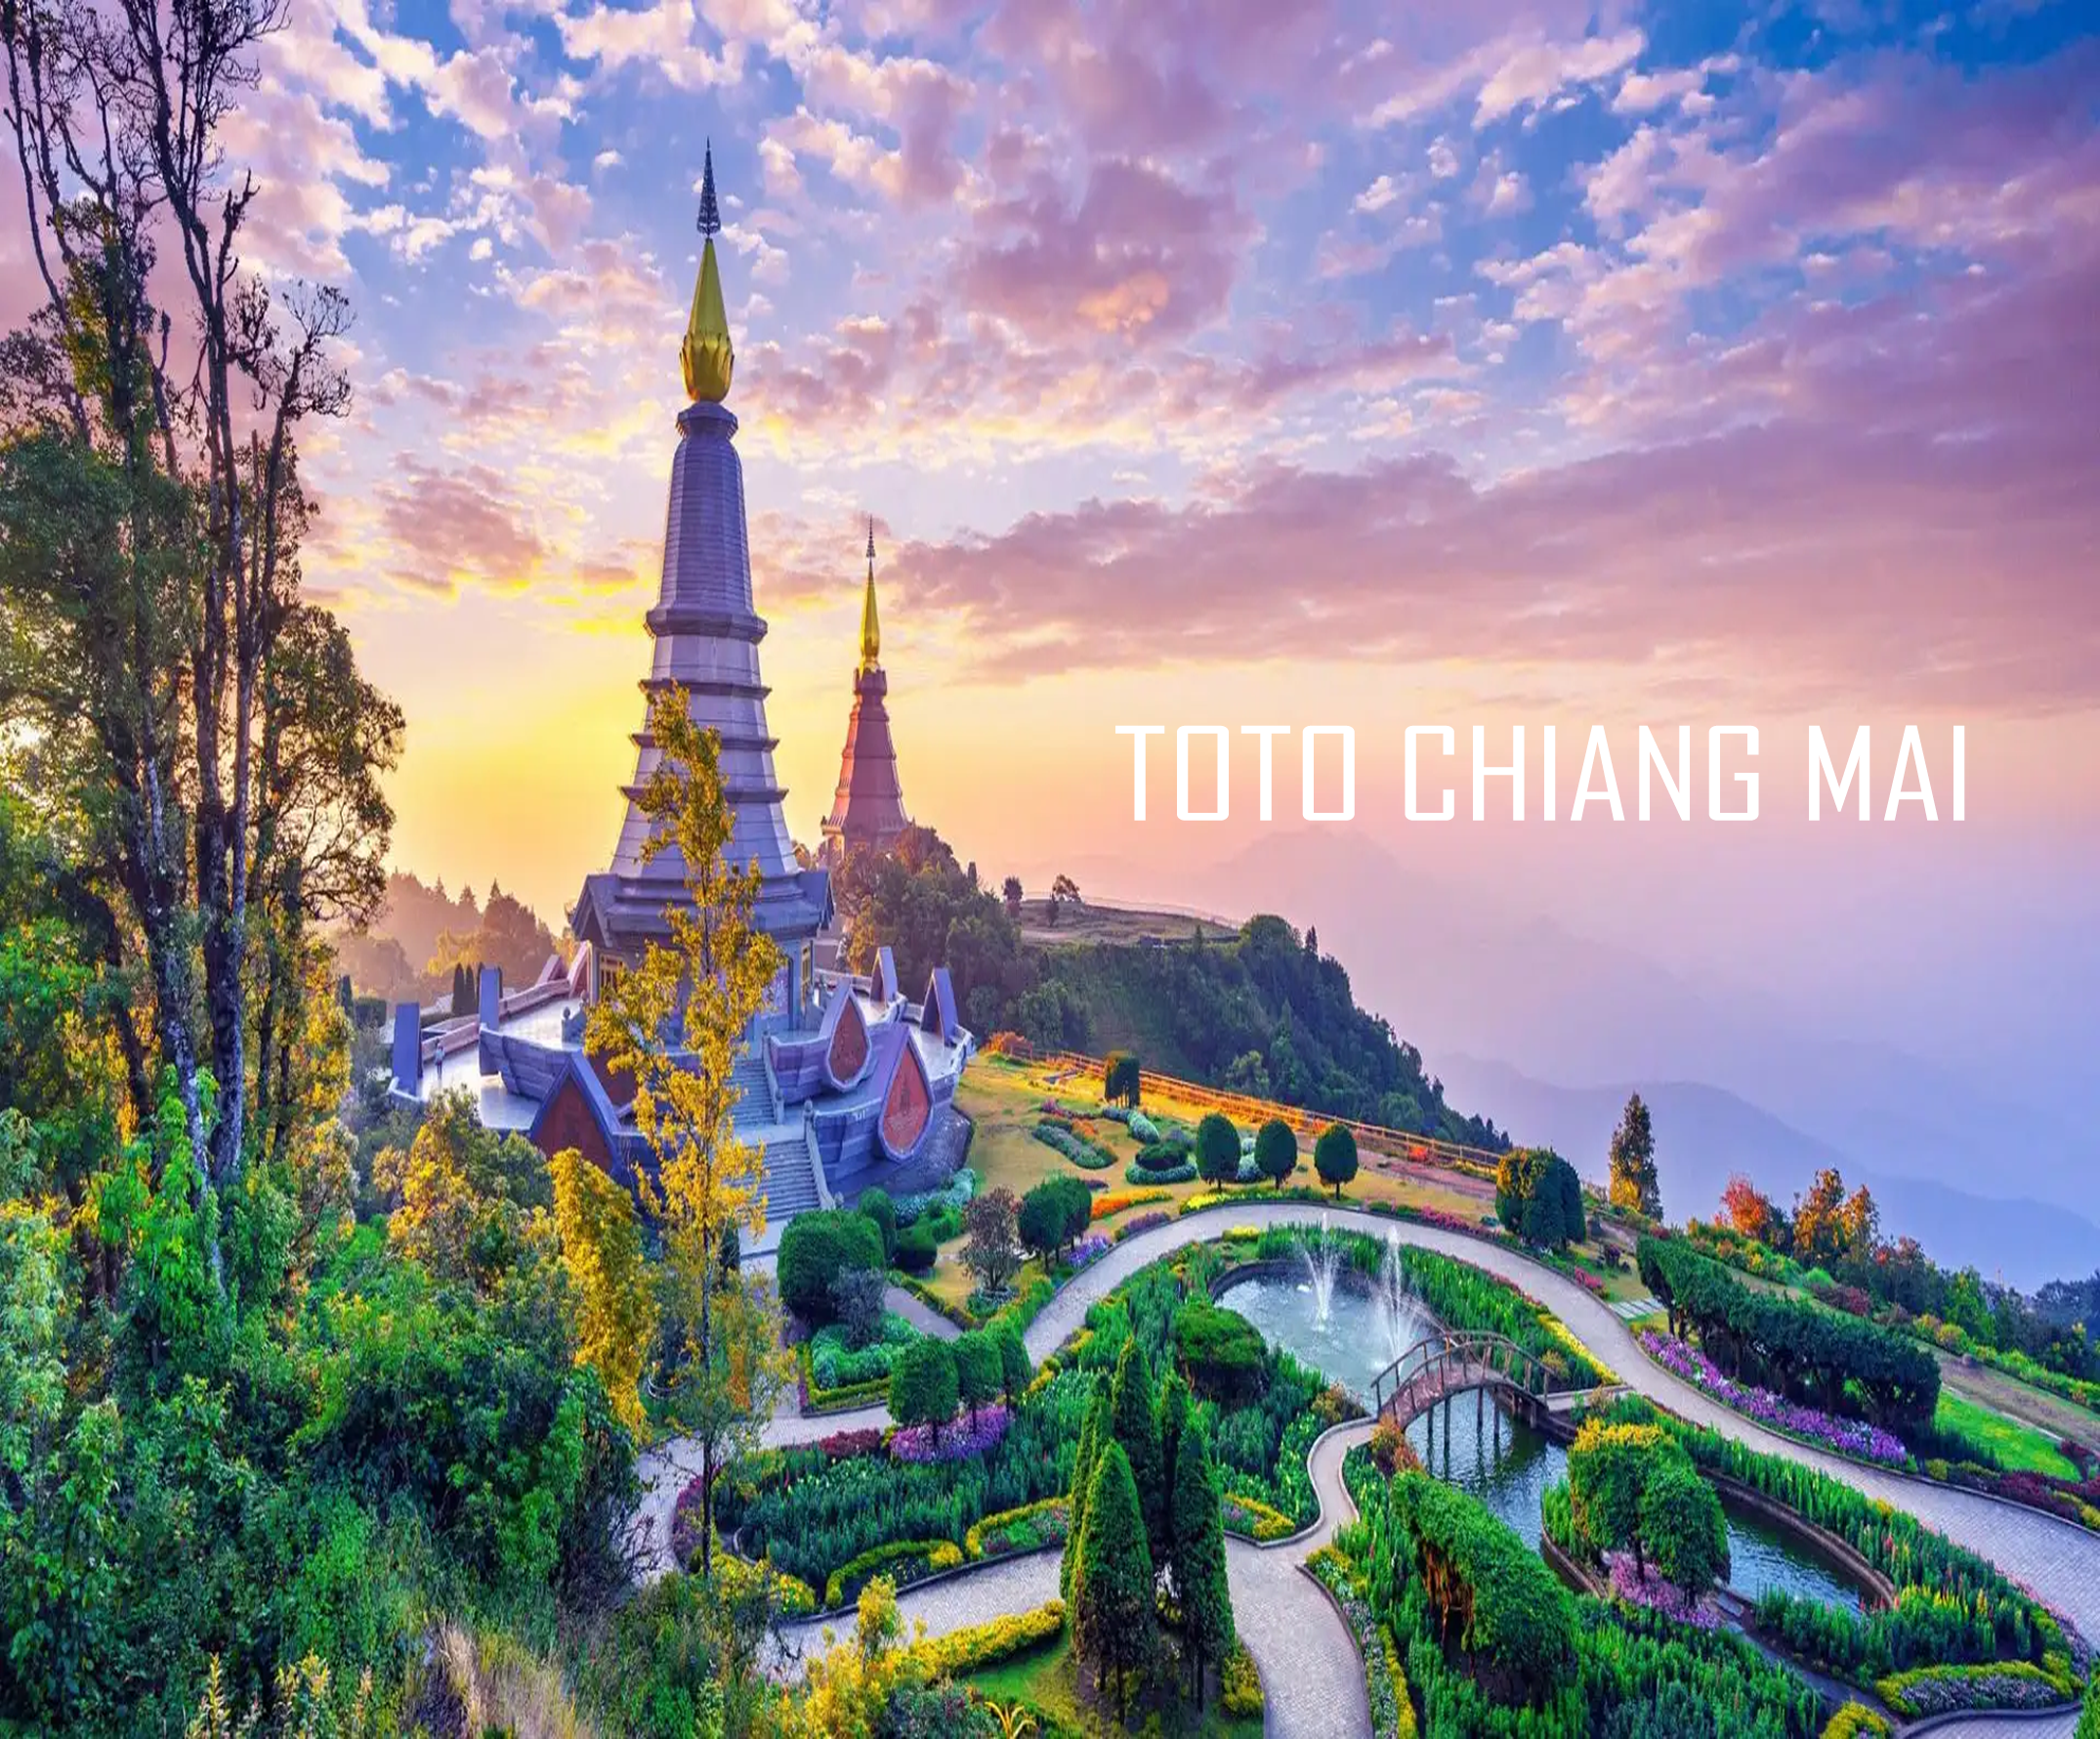 Toto ChiangMai Online